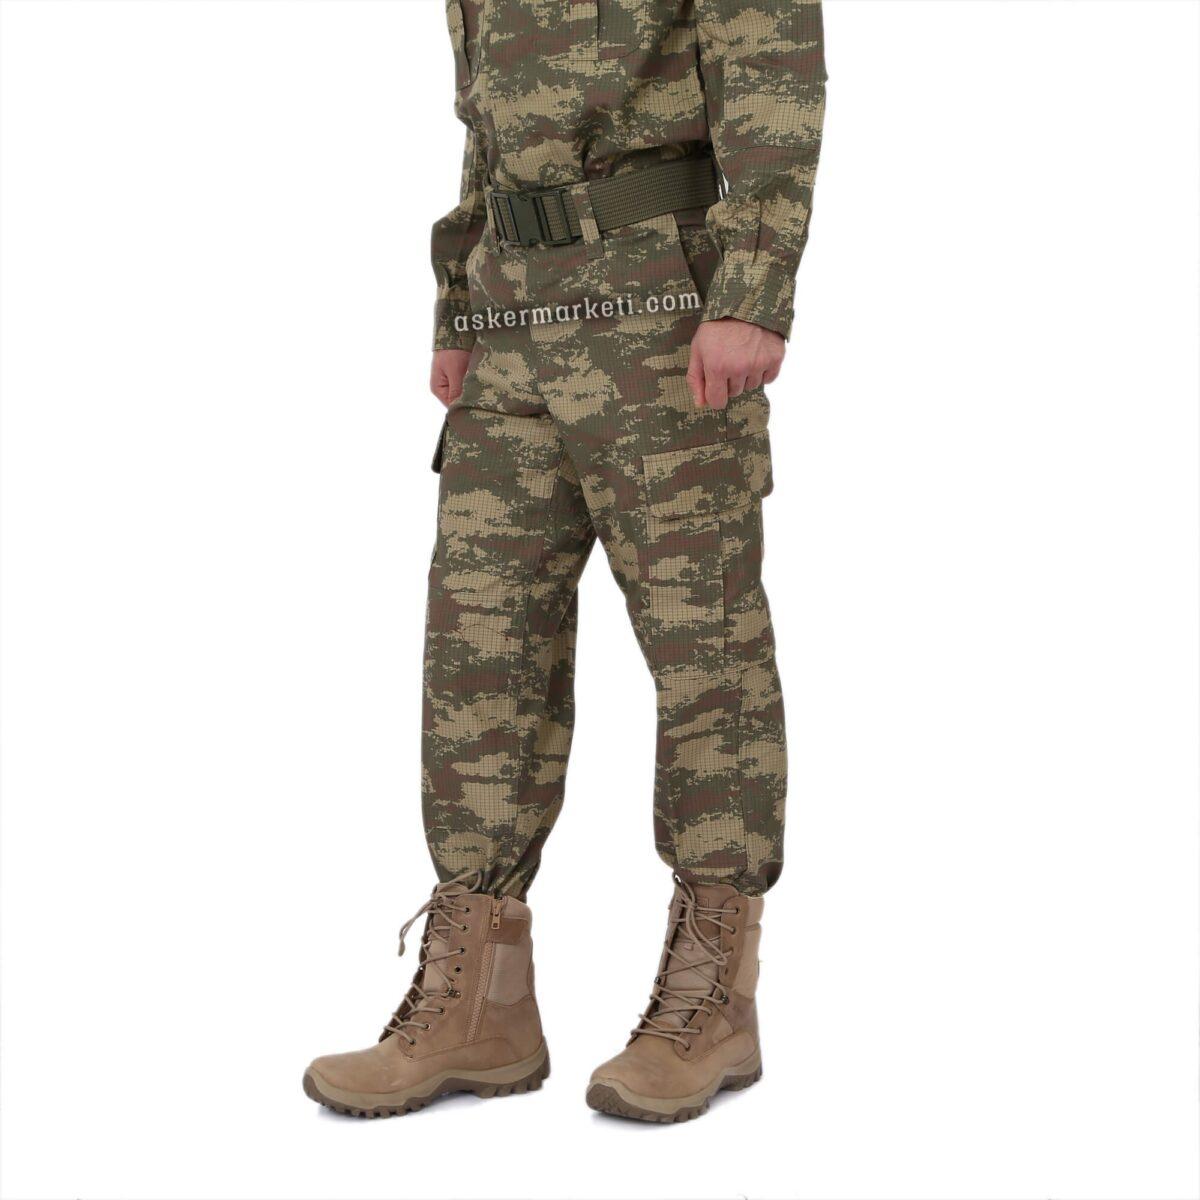 askeri kamuflaj pantolon fiyati ink